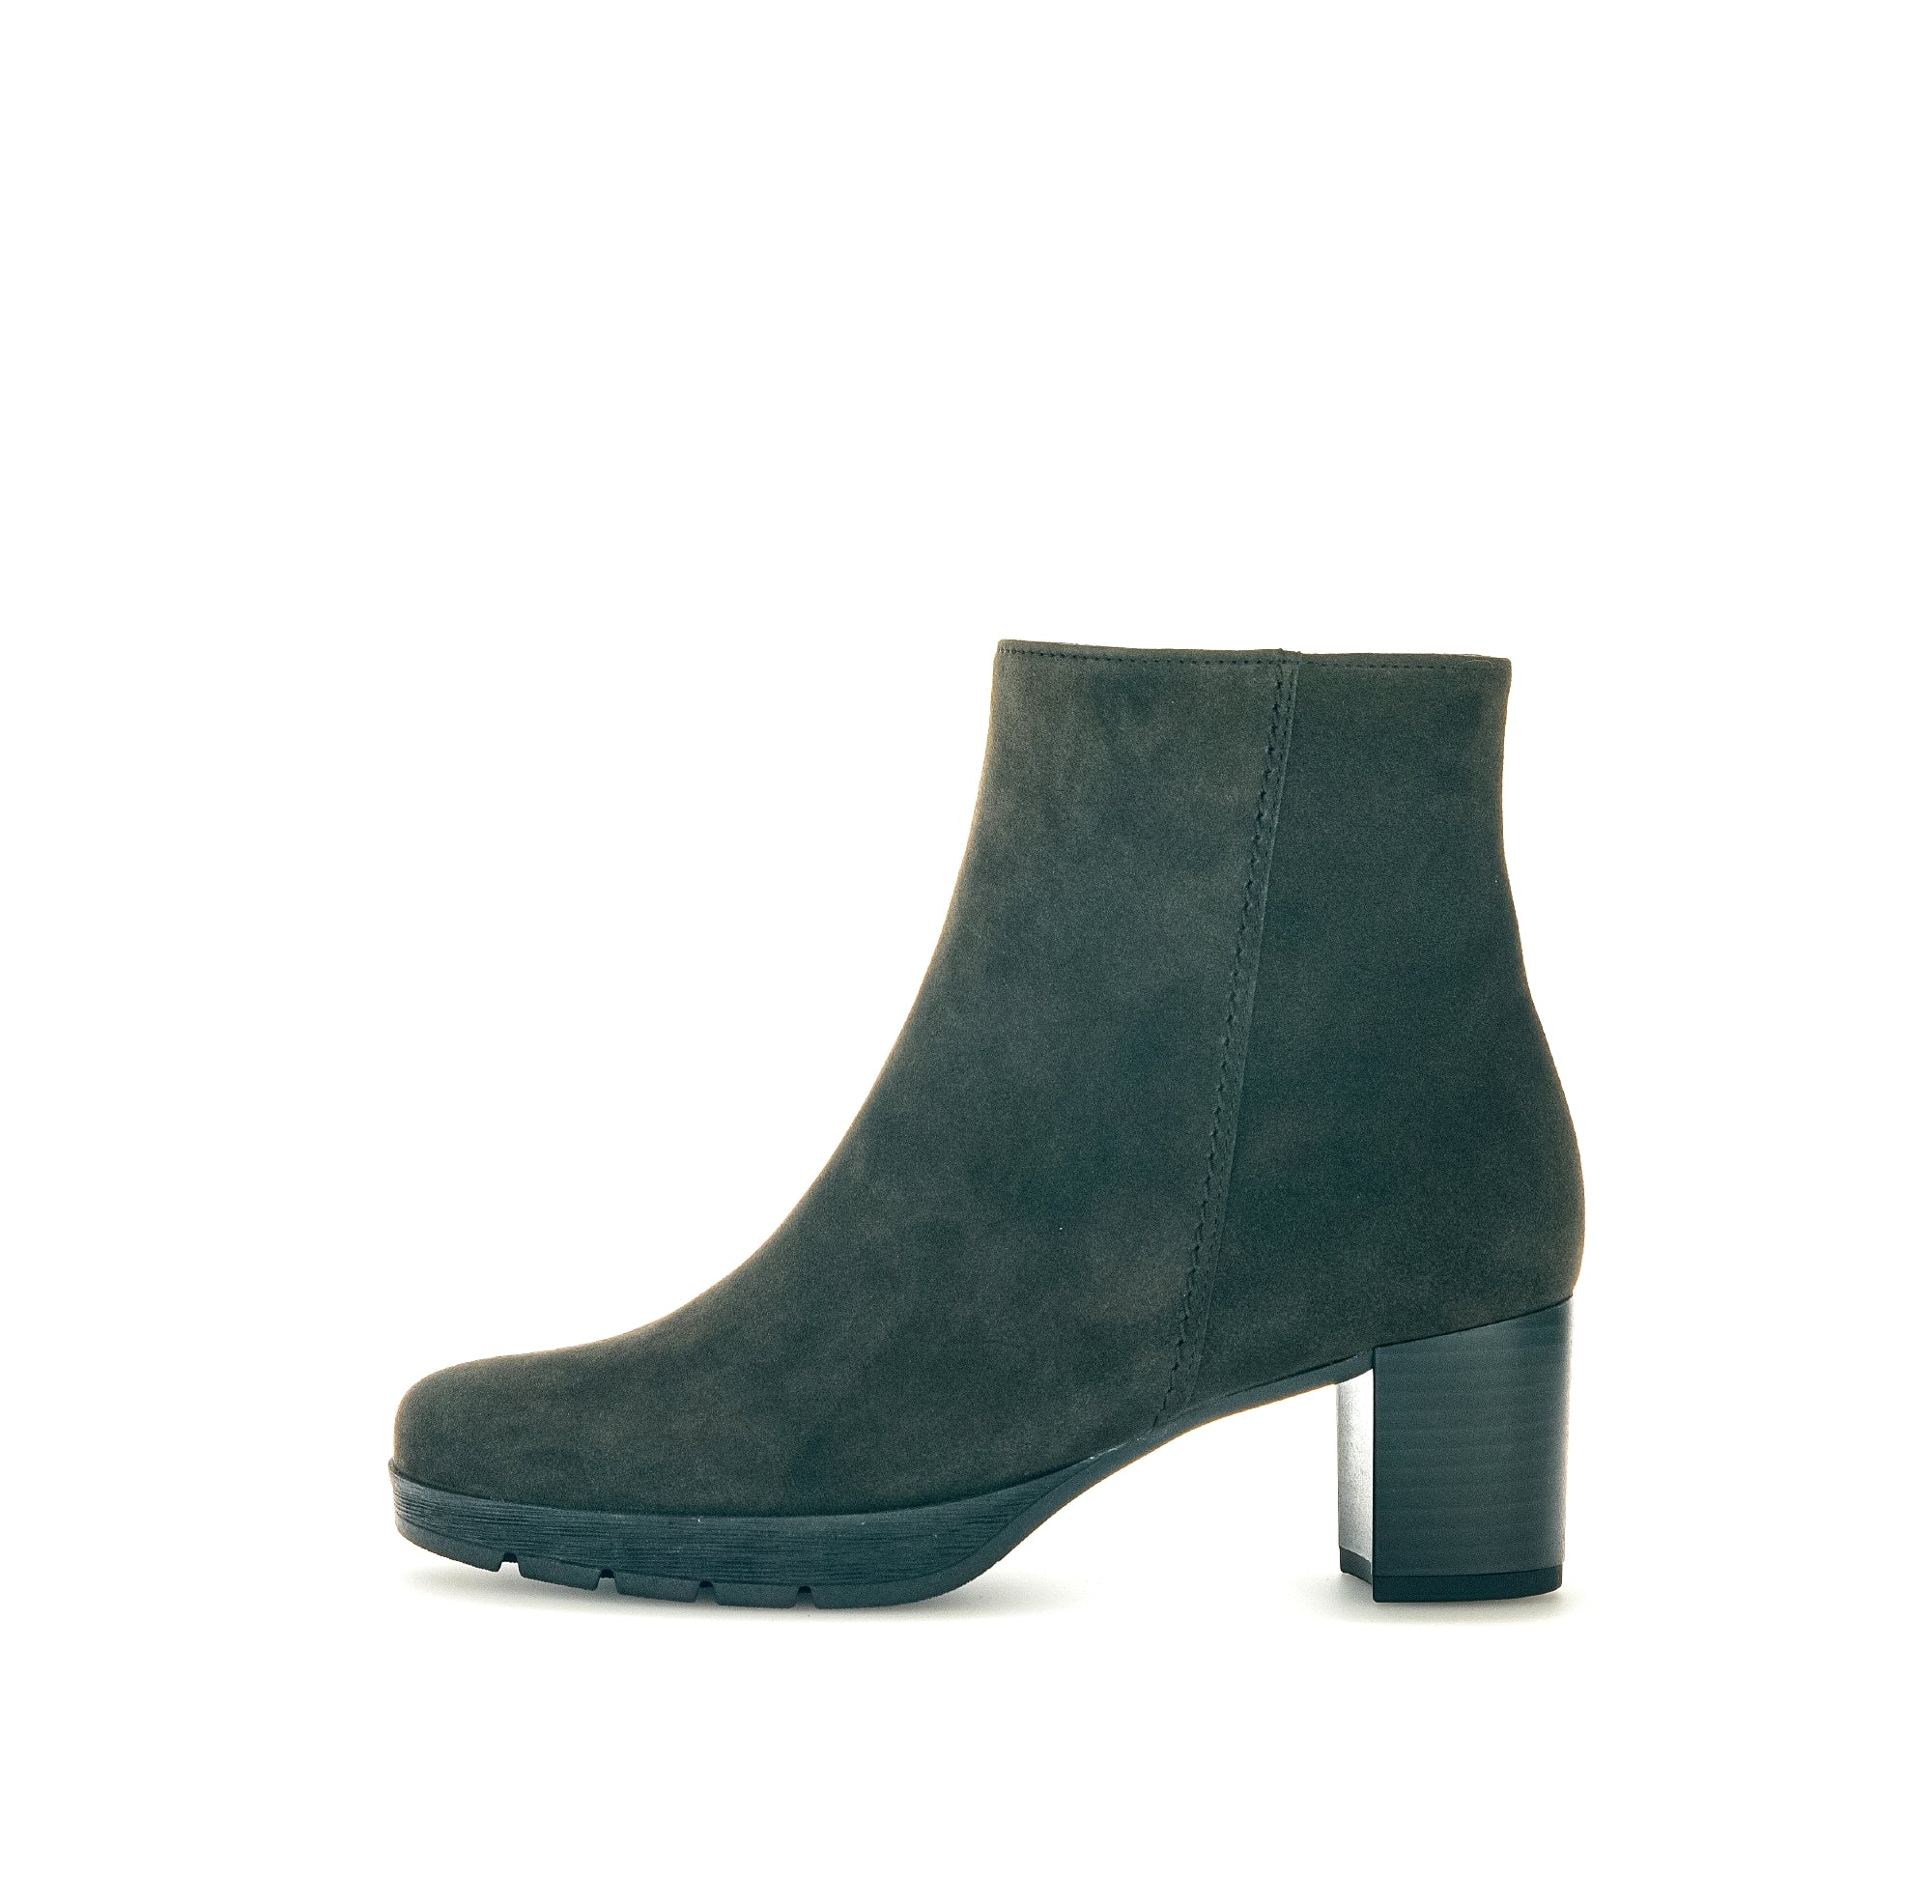 '32.071.29' women's boot - Green - Chaplinshoes'32.071.29' women's boot - GreenGabor